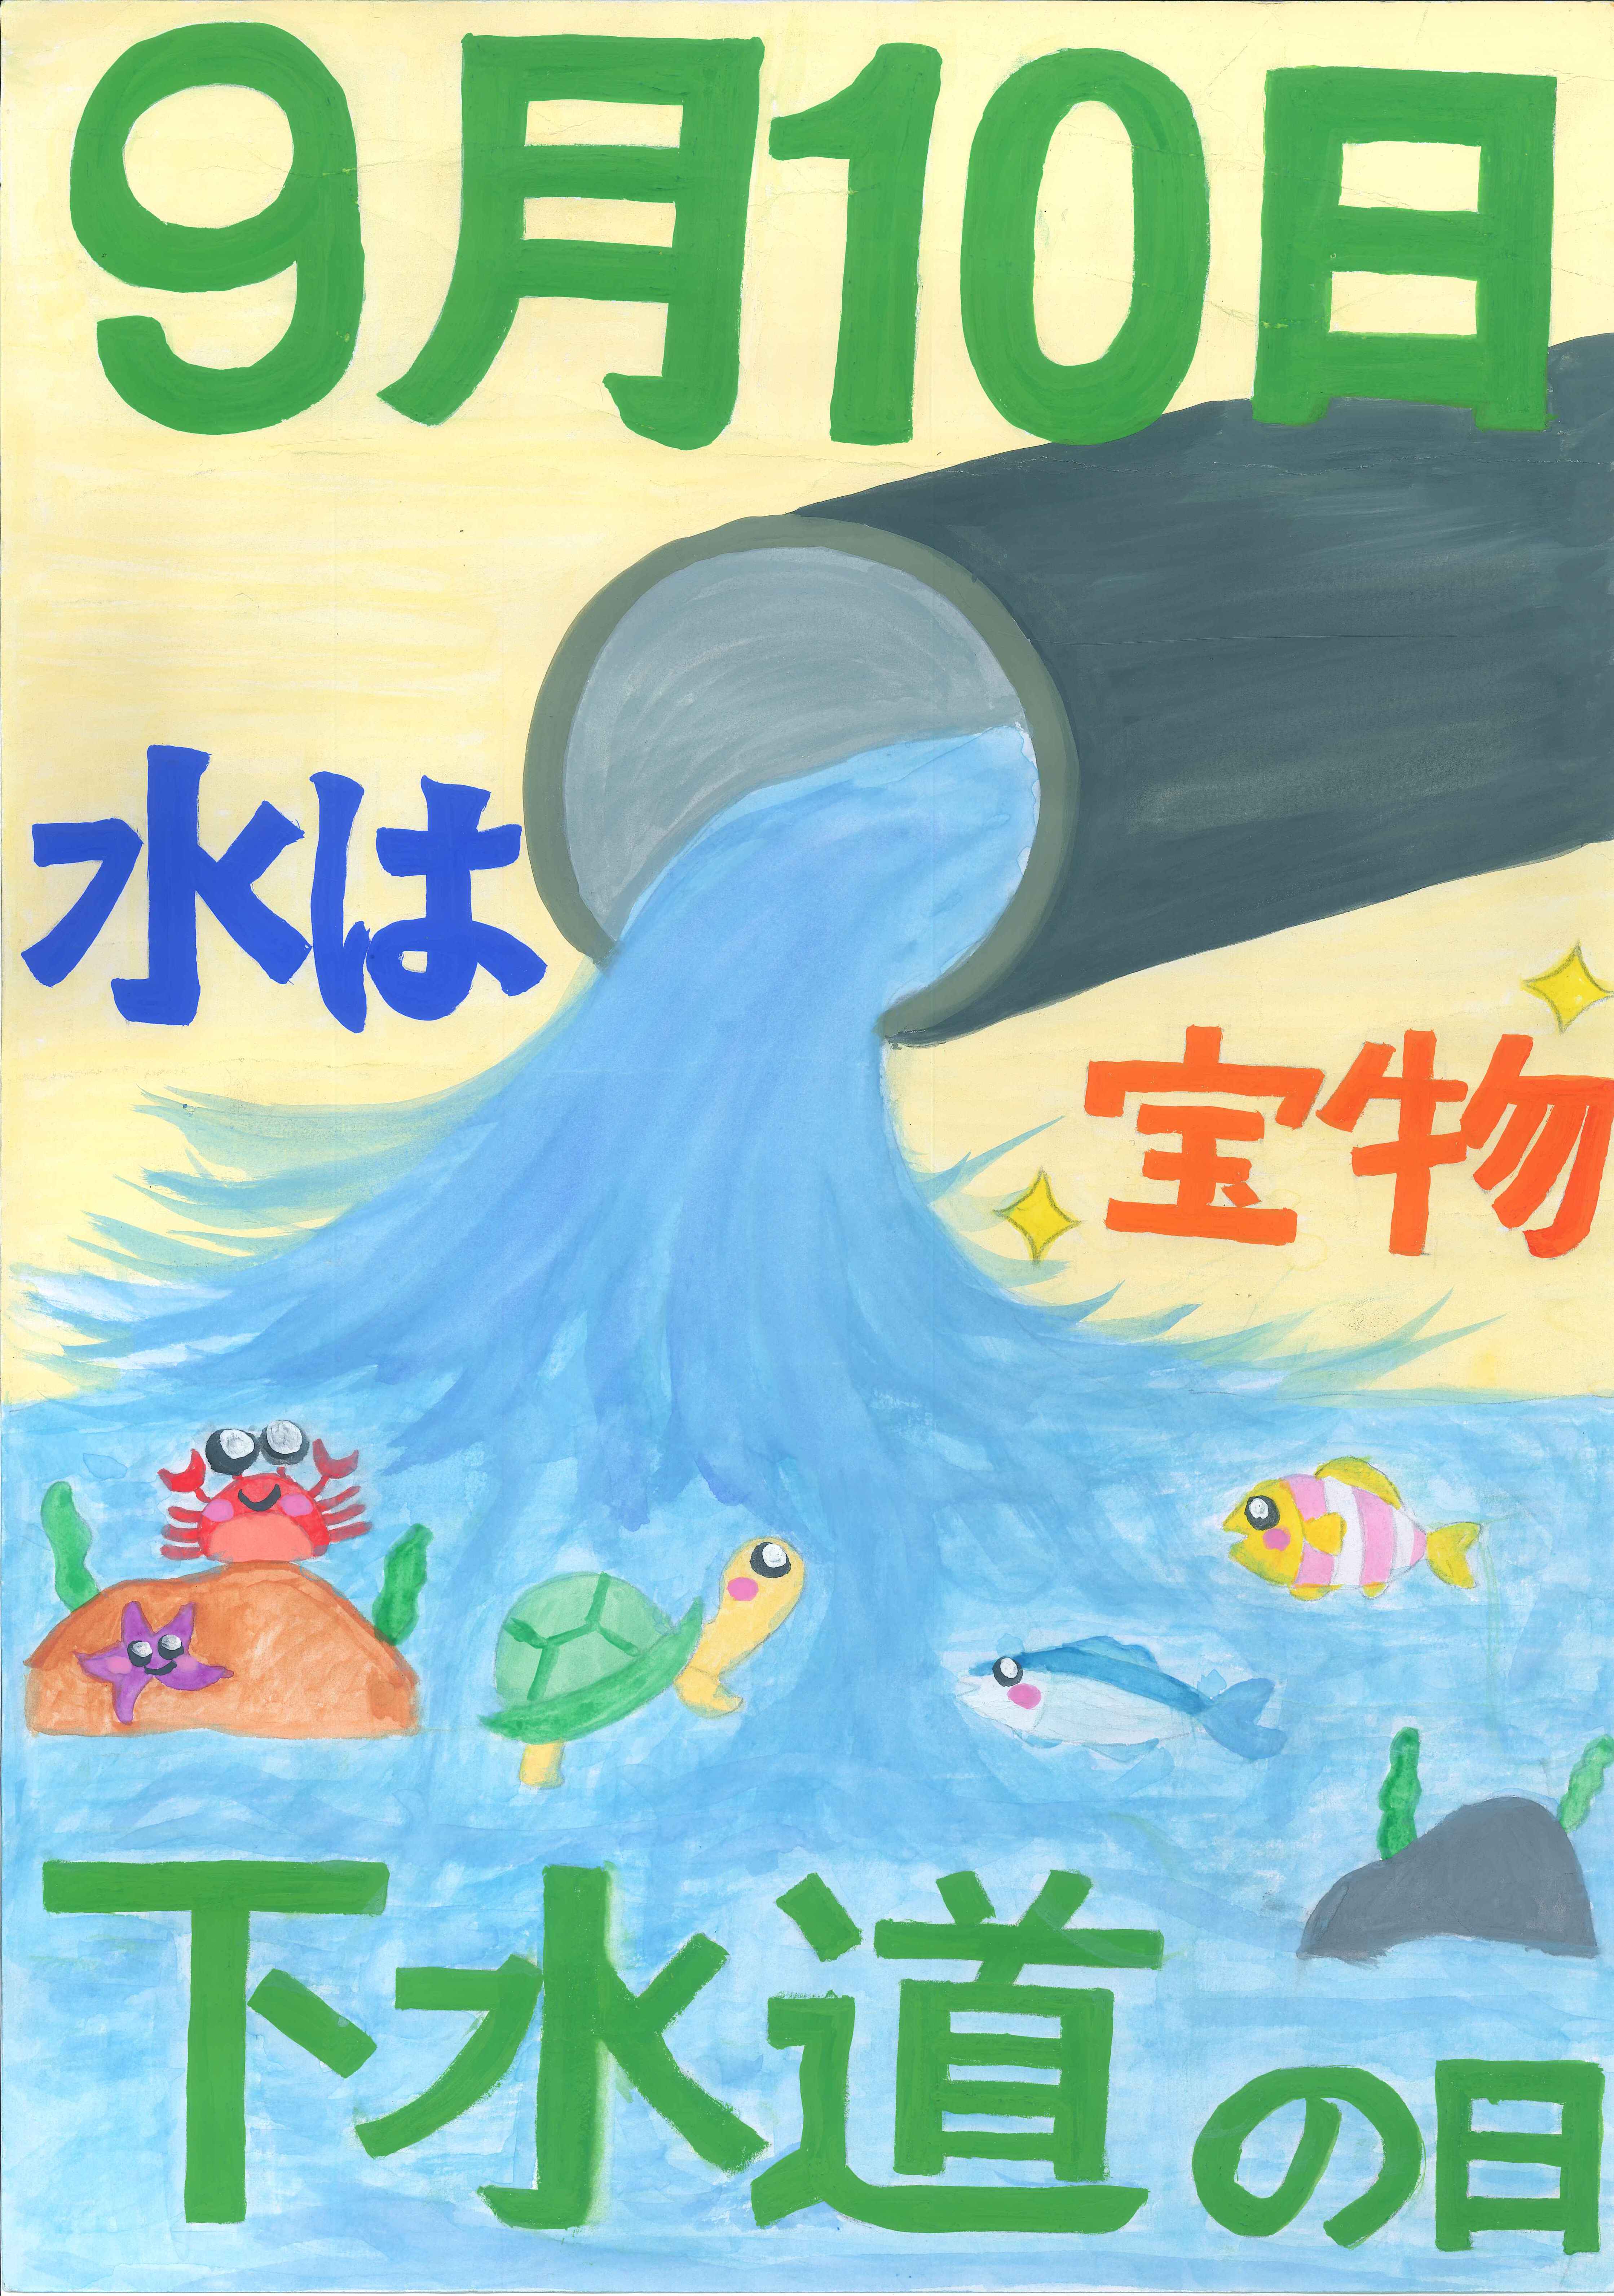 公益社団法人 日本下水道協会 | 下水道の役割や効果その仕組をはじめ、下水道事業が円滑に執行されるよう、情報提供に努める公益社団法人日本下水道協会です。